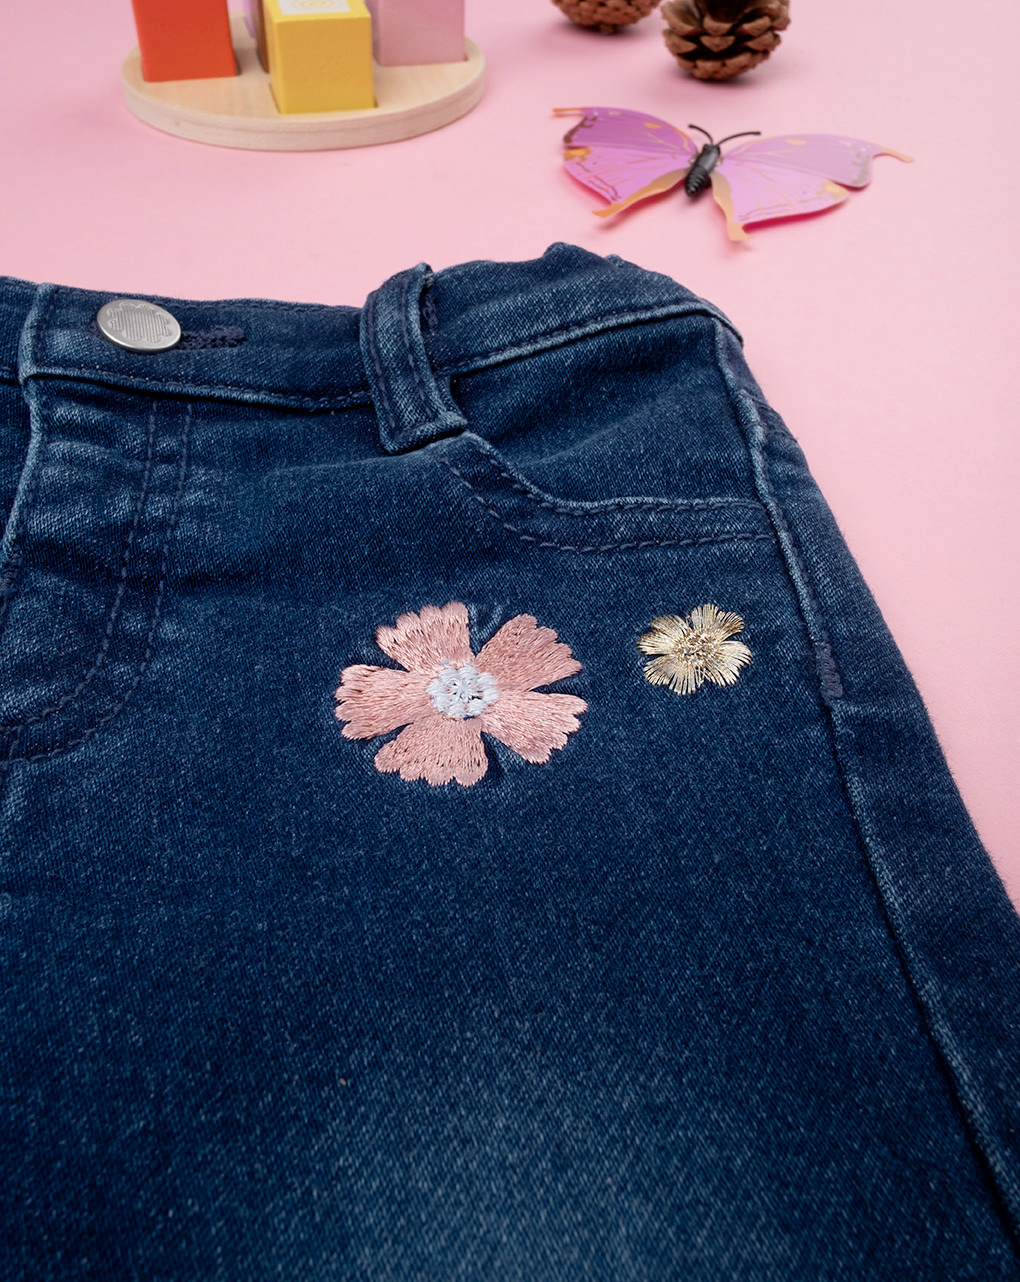 βρεφικό τζιν παντελόνι μπλε με λουλούδια για κορίτσι - Prénatal